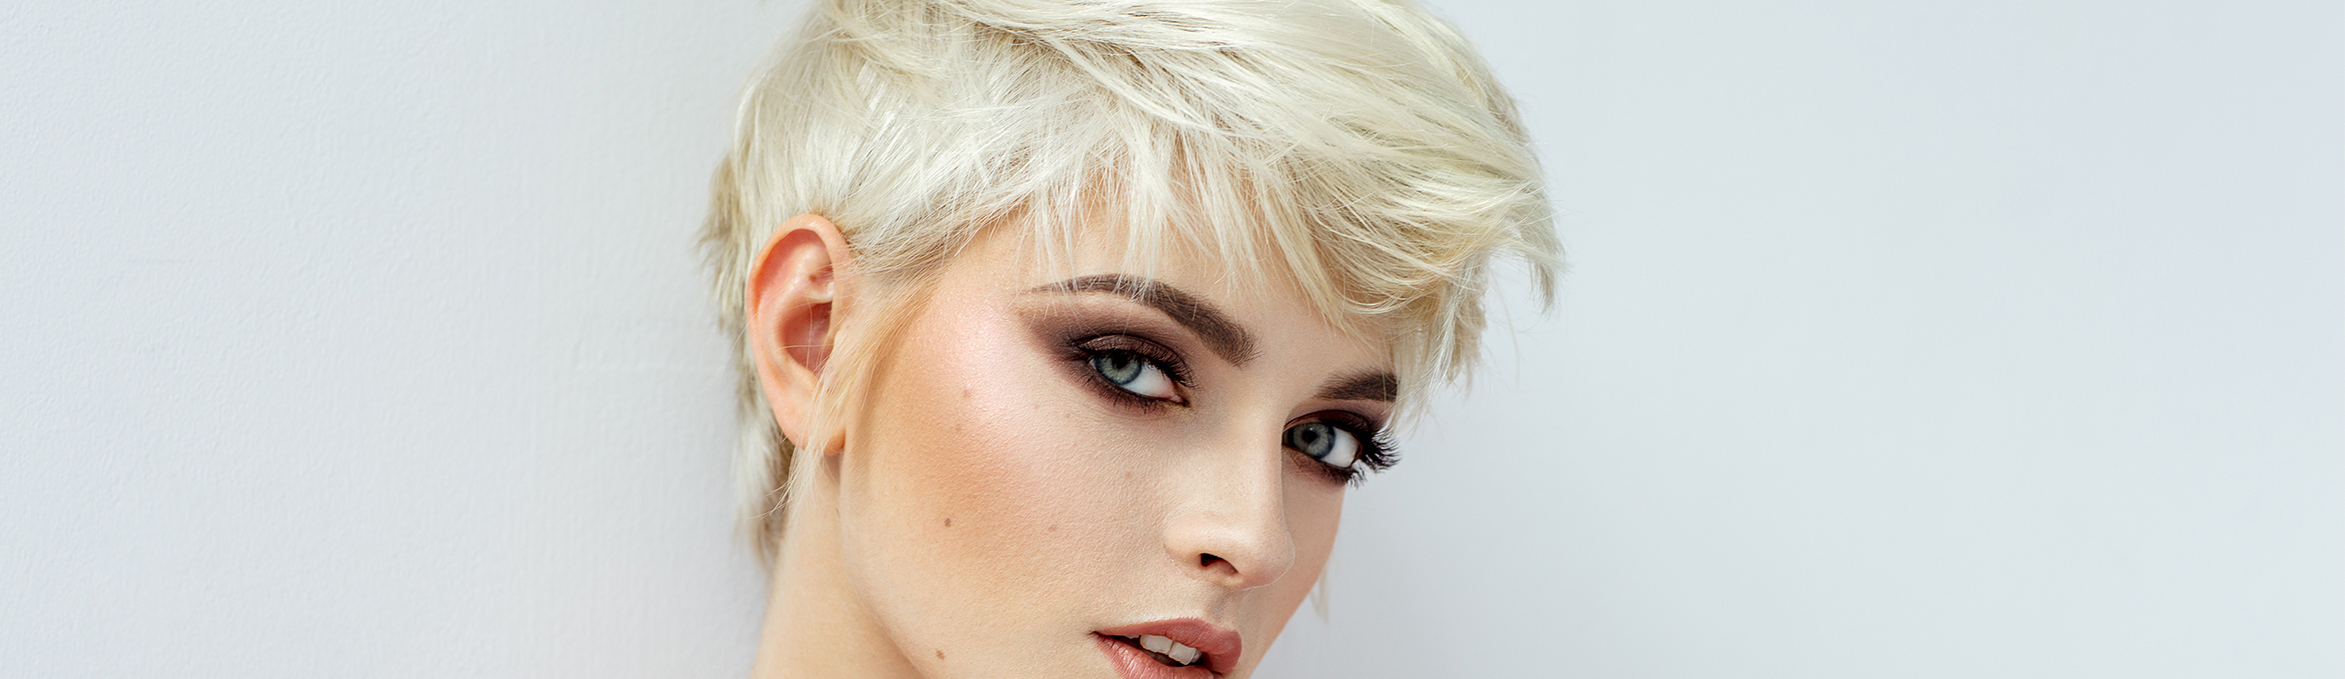 biondo - modella - design - simply blond - linea - trattanti -à capelli - biondi - shampoo - antigiallo - no yellow 